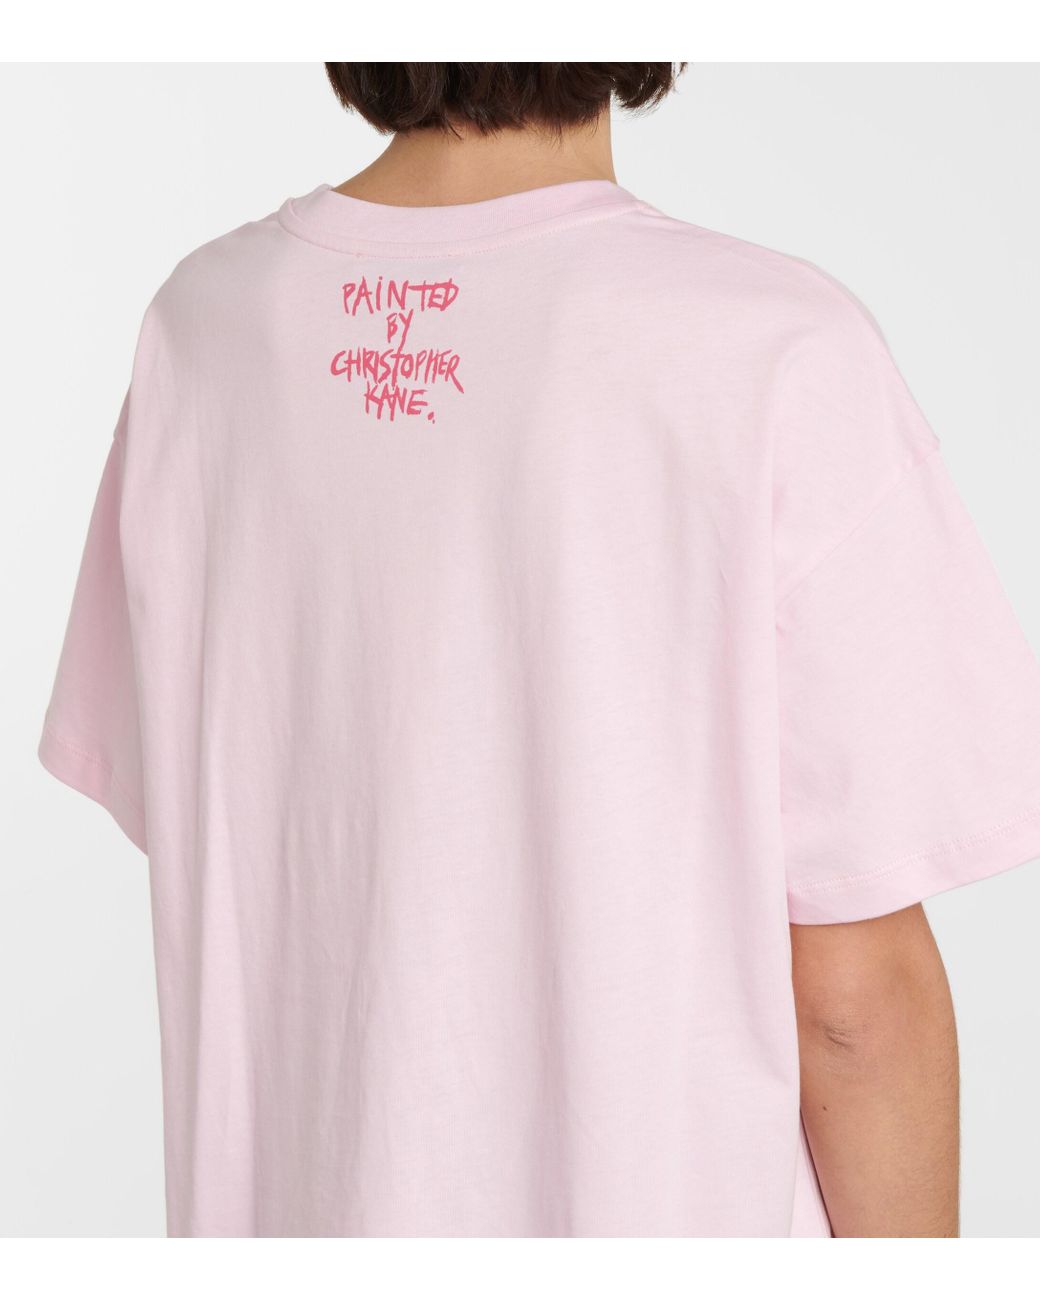 Christopher Kane Belinda Printed Cotton T-shirt in Pink | Lyst